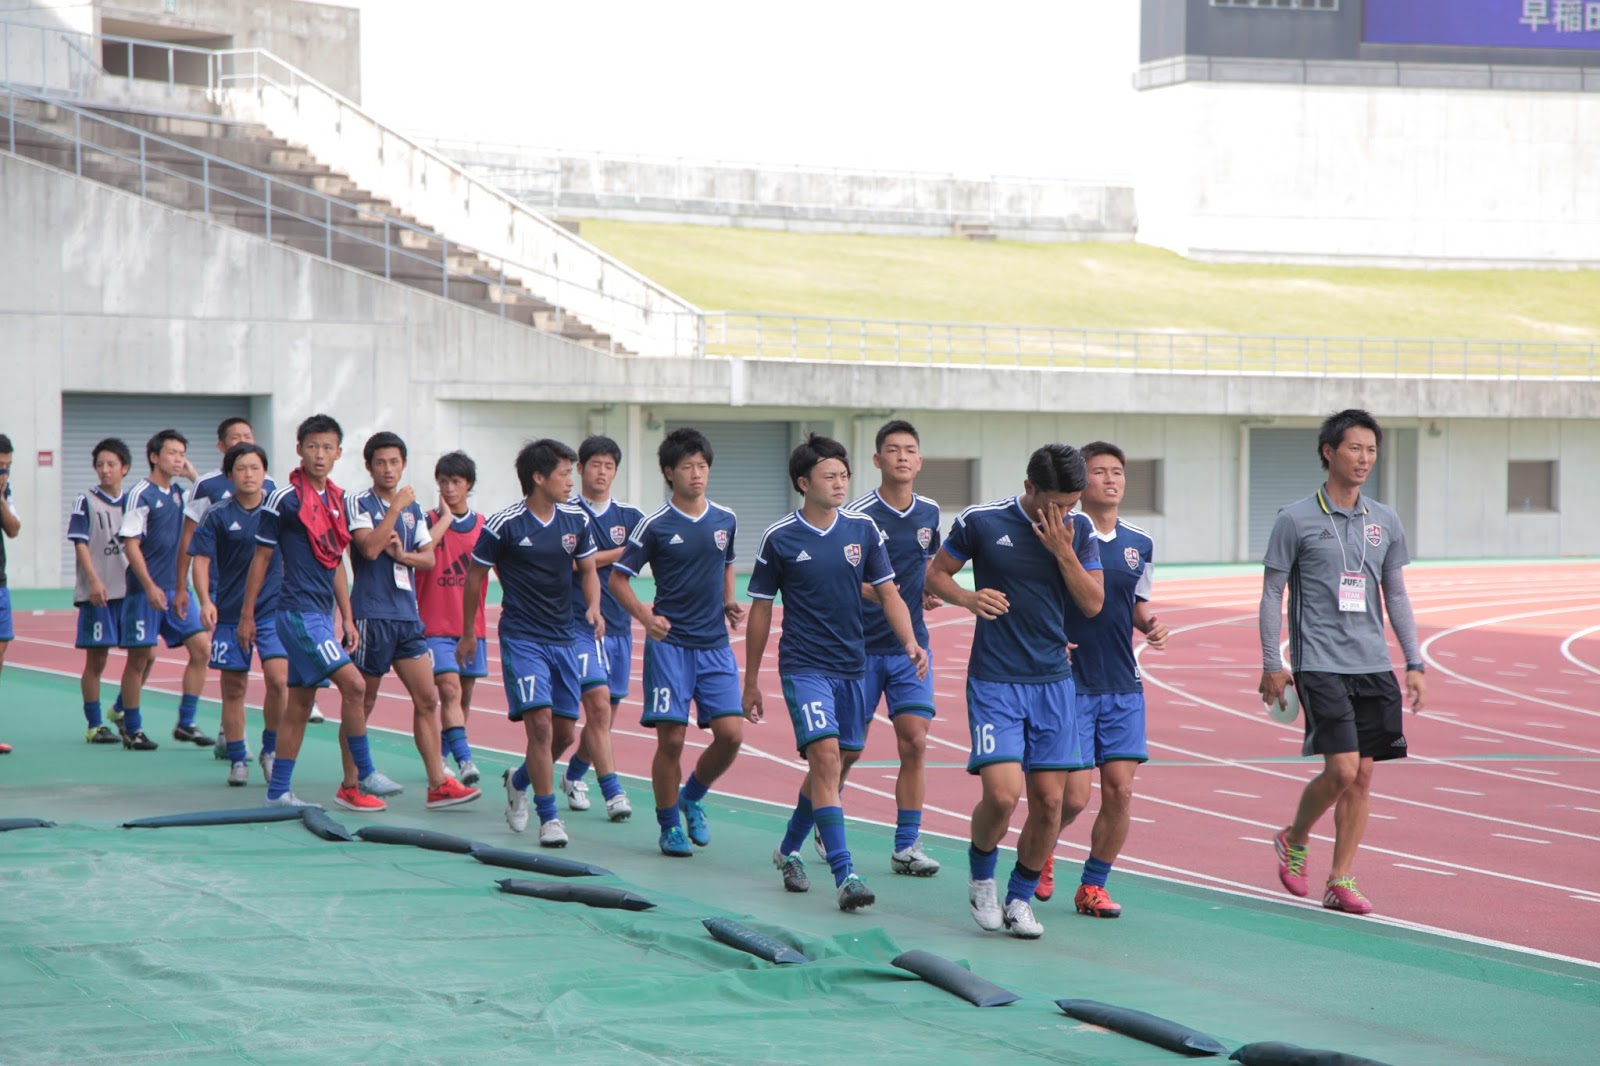 福山大学 学長室ブログ 第40回総理大臣杯全日本大学サッカートーナメント